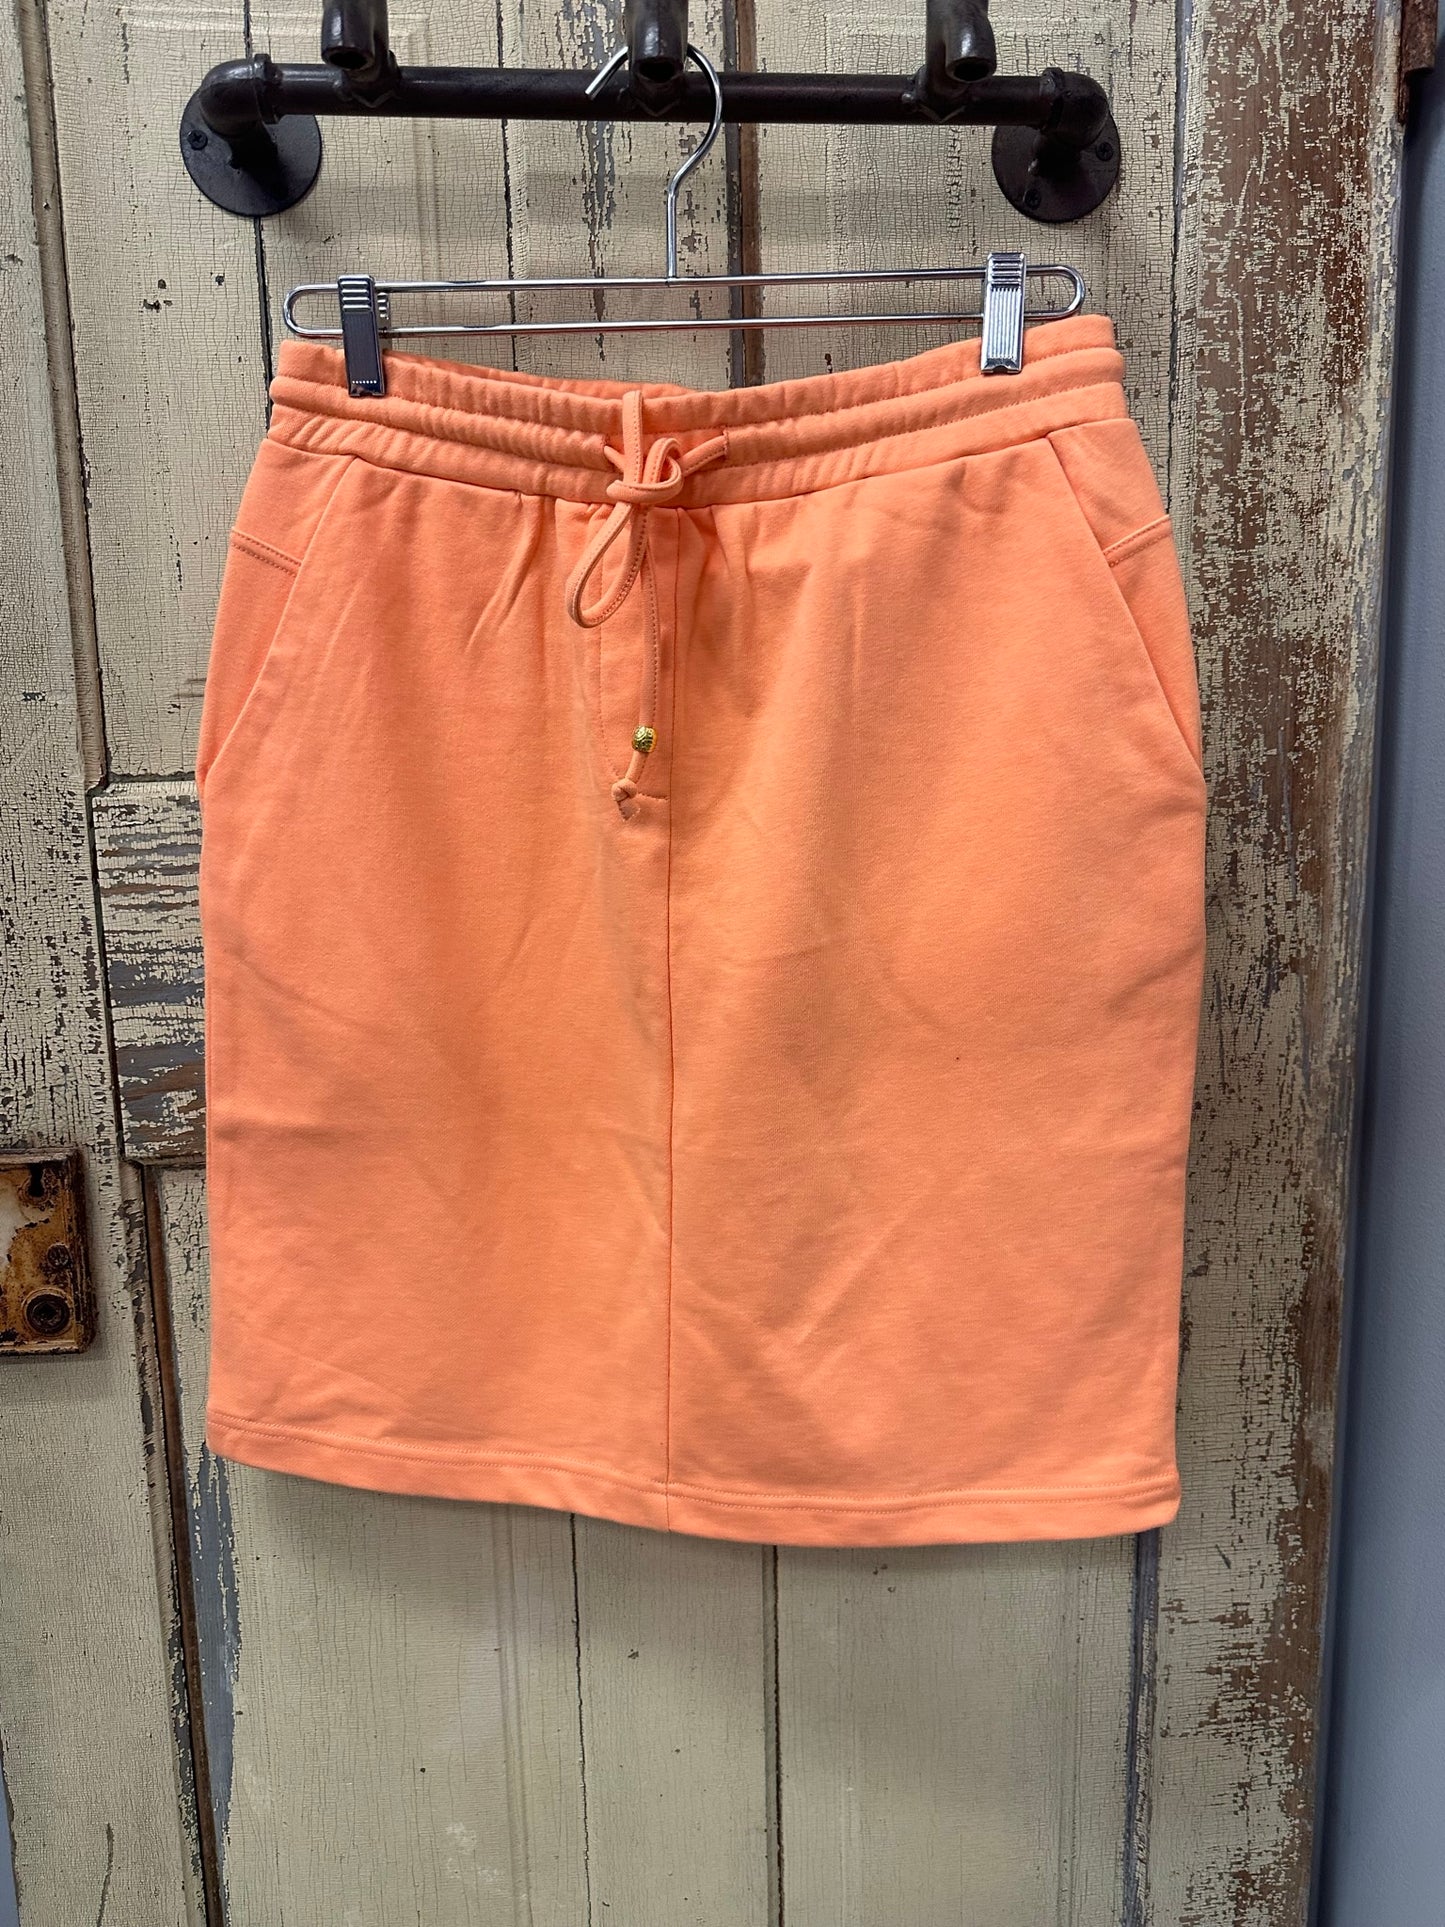 Peach Sweatshirt Skirt